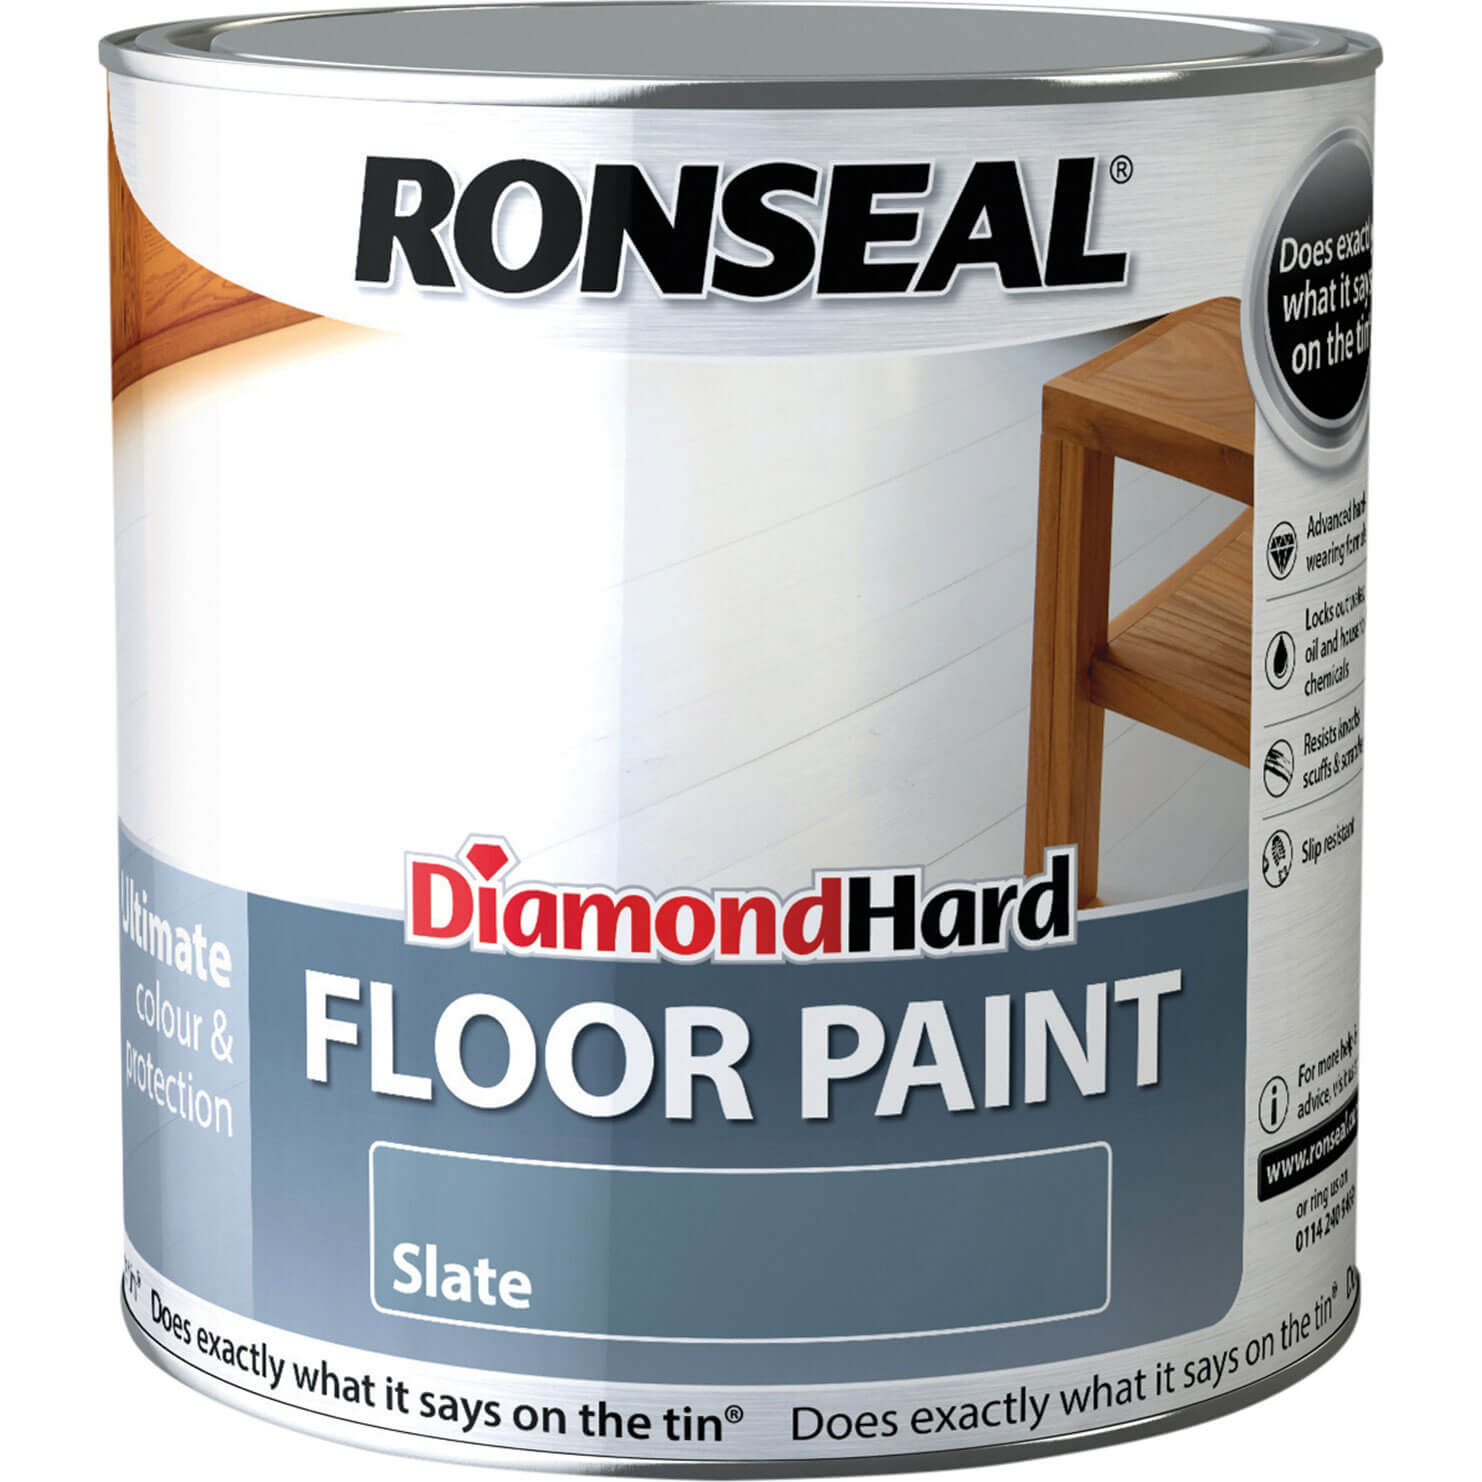 Image of Ronseal Diamond Hard Floor Paint Slate 2.5l